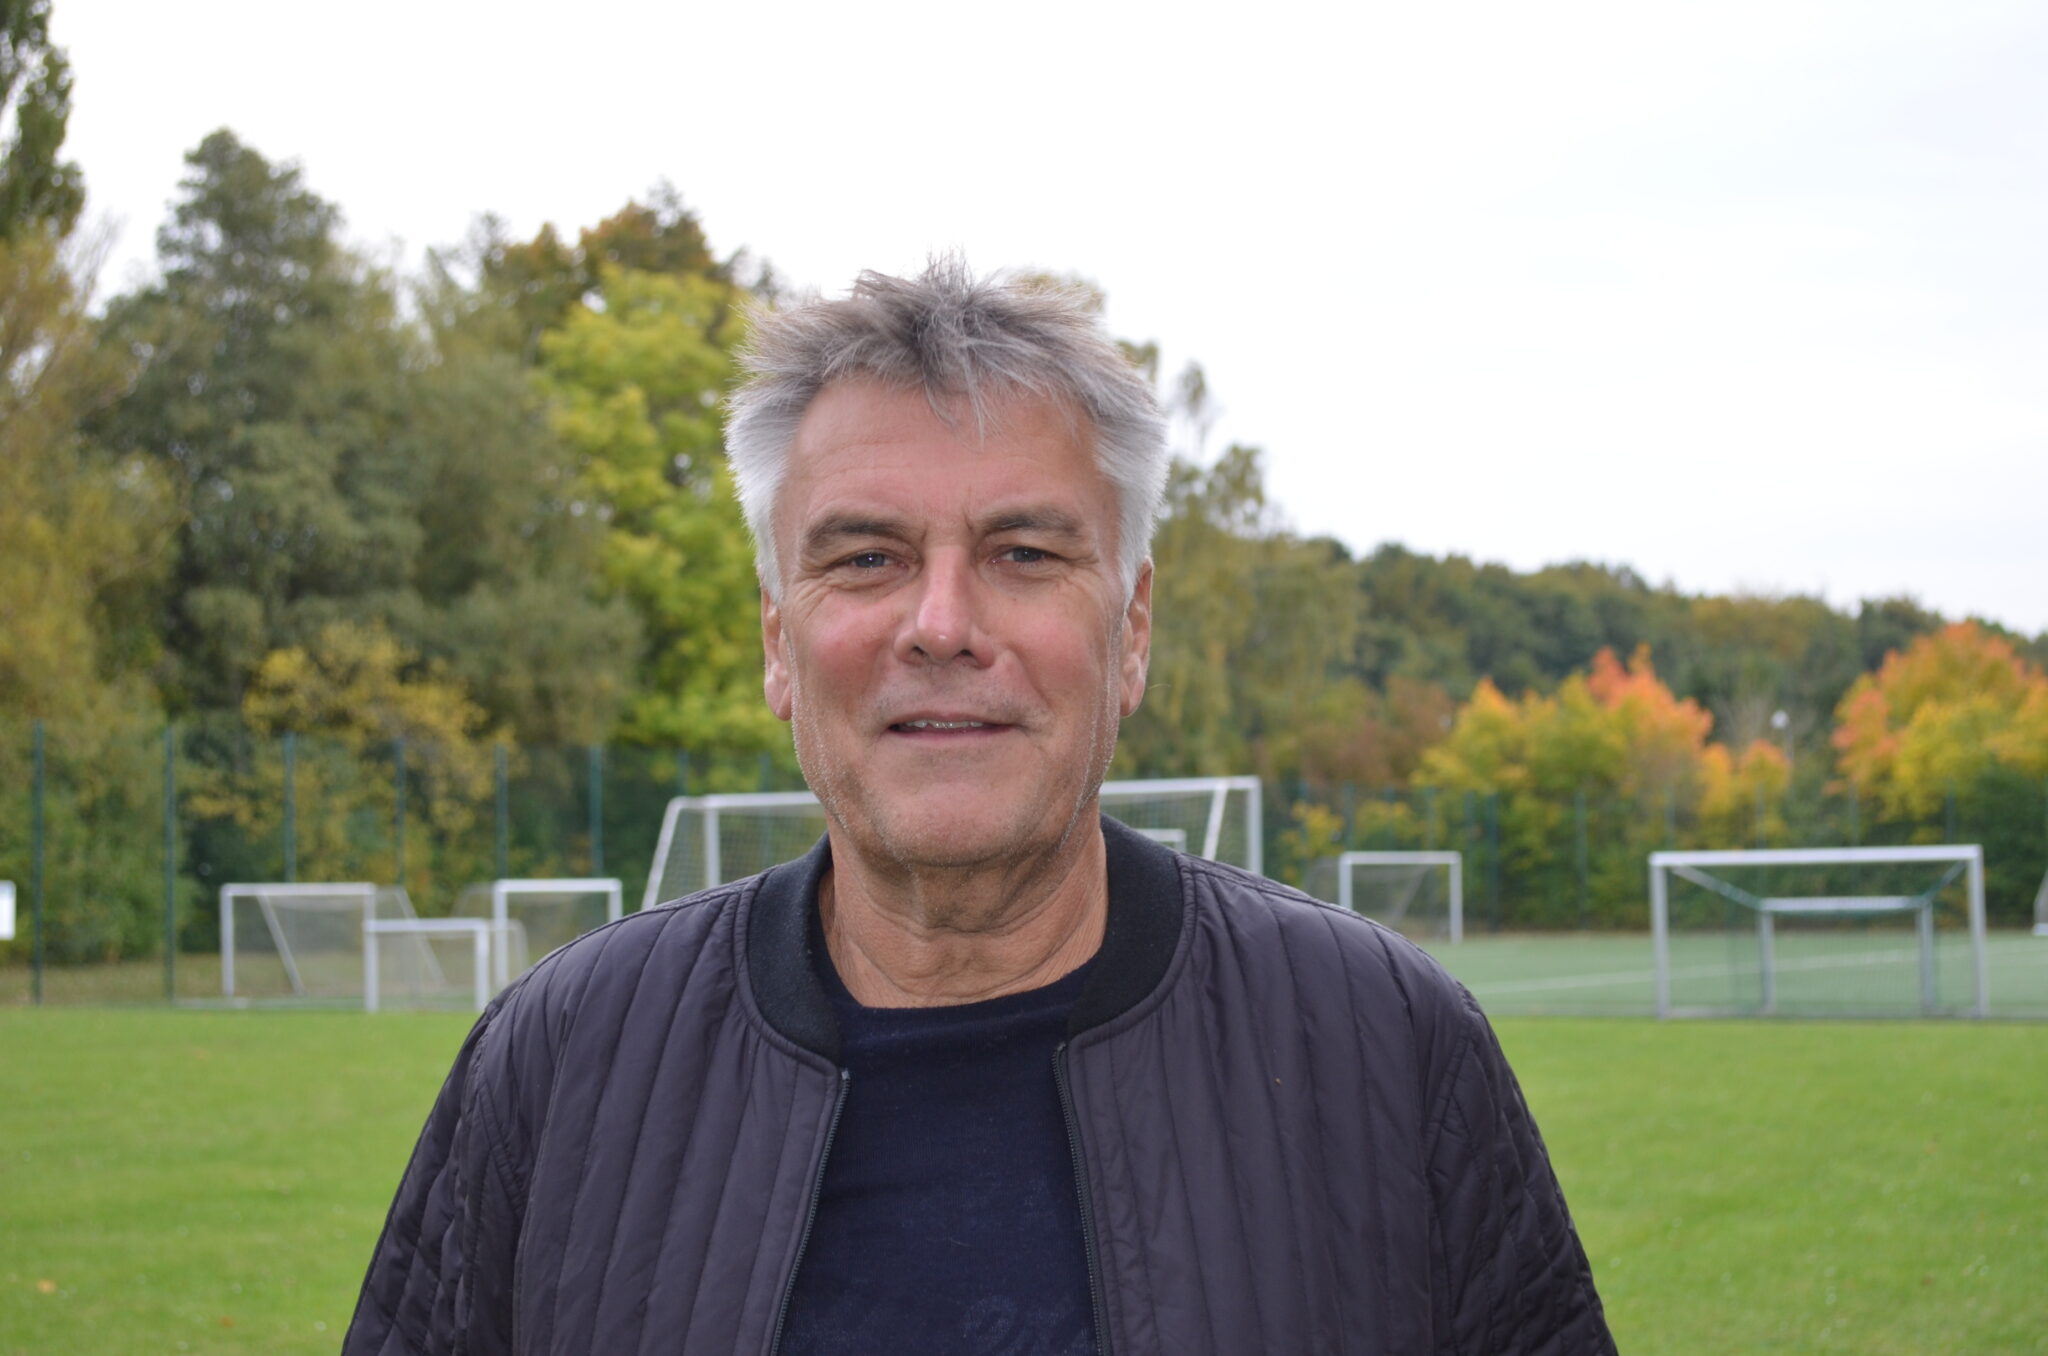 Poul Hansen, tidligere toptræner, er i dag DBU instruktør og ekspert kommentator for TV3. Han bor til dagligt i Gråsten i Sønderjylland med sin samleverske og to børn. Han har desuden to andre børn fra et tidligere ægteskab.